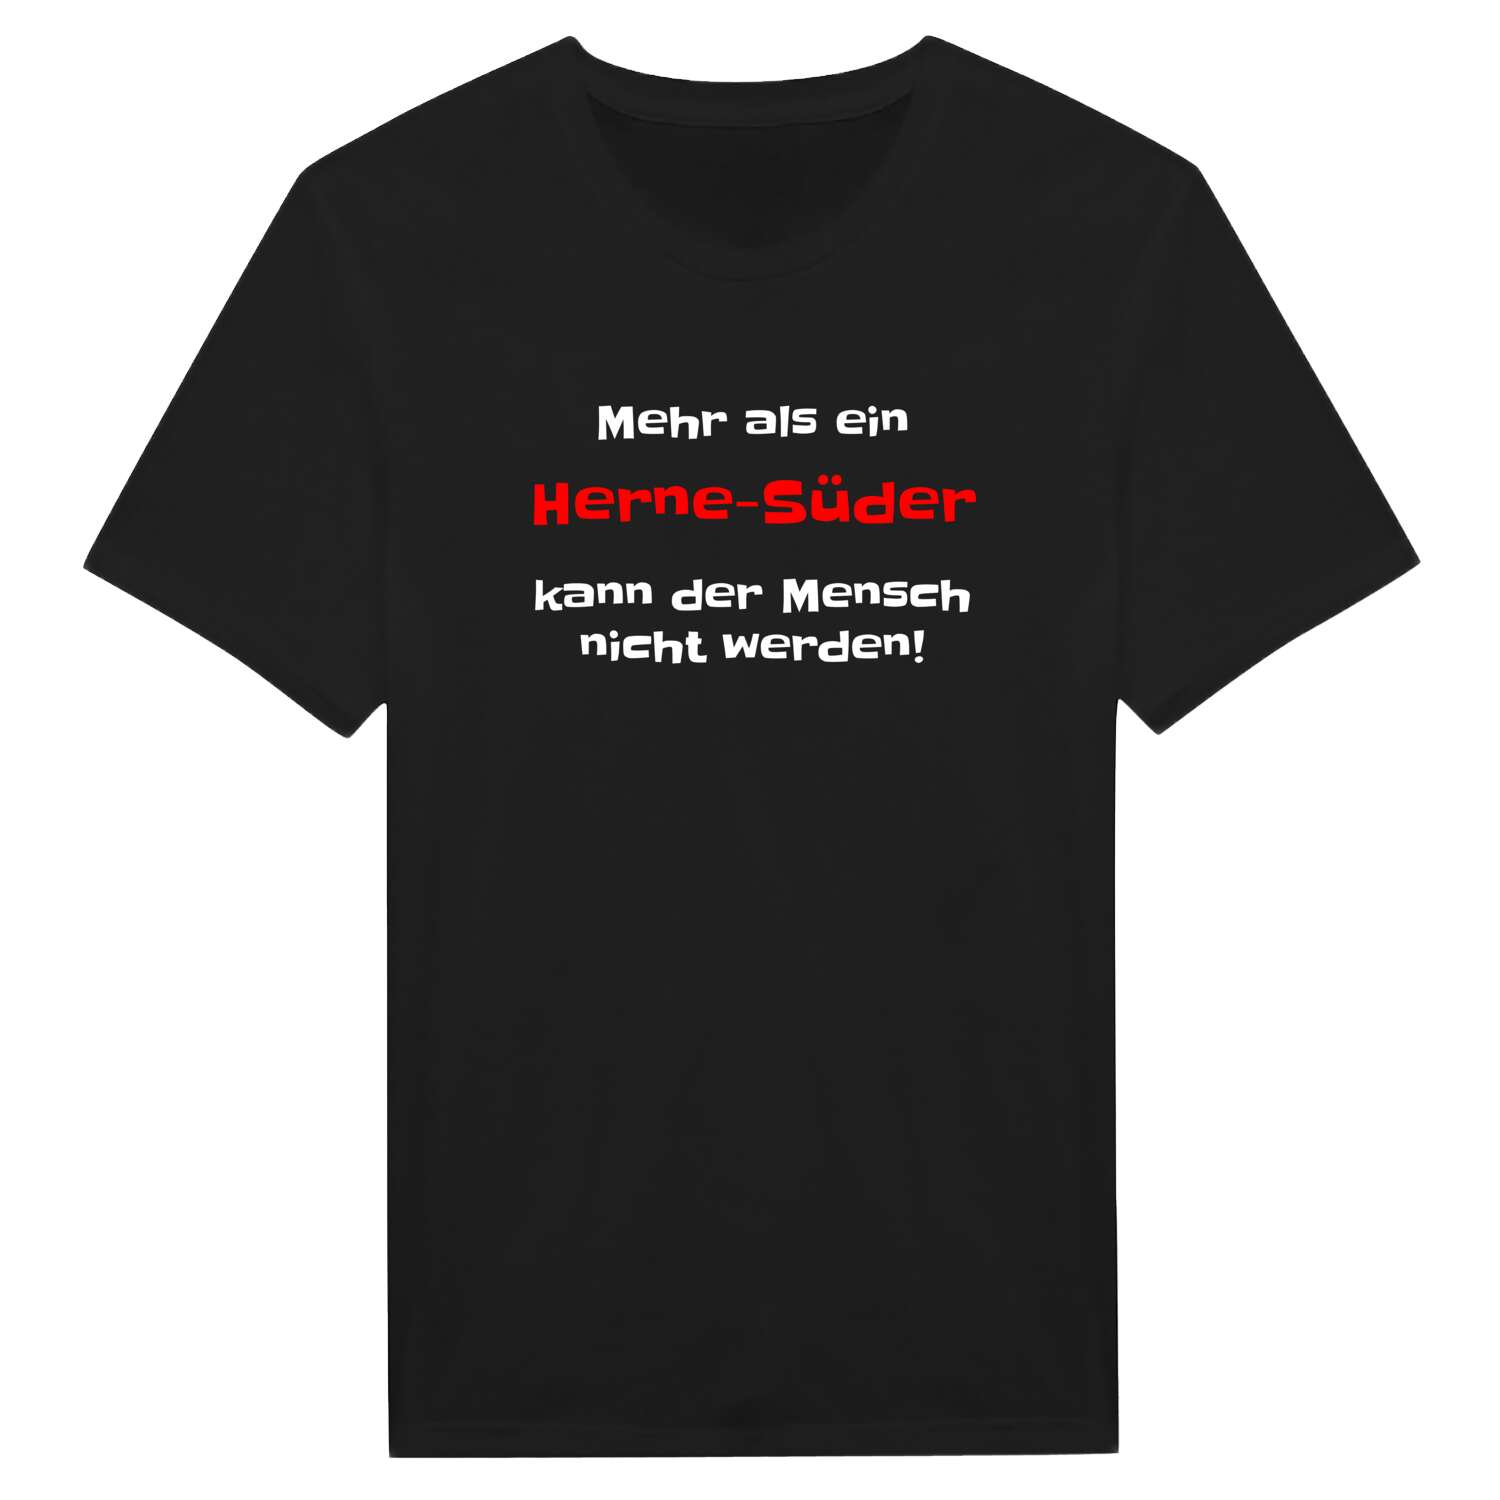 Herne-Süd T-Shirt »Mehr als ein«